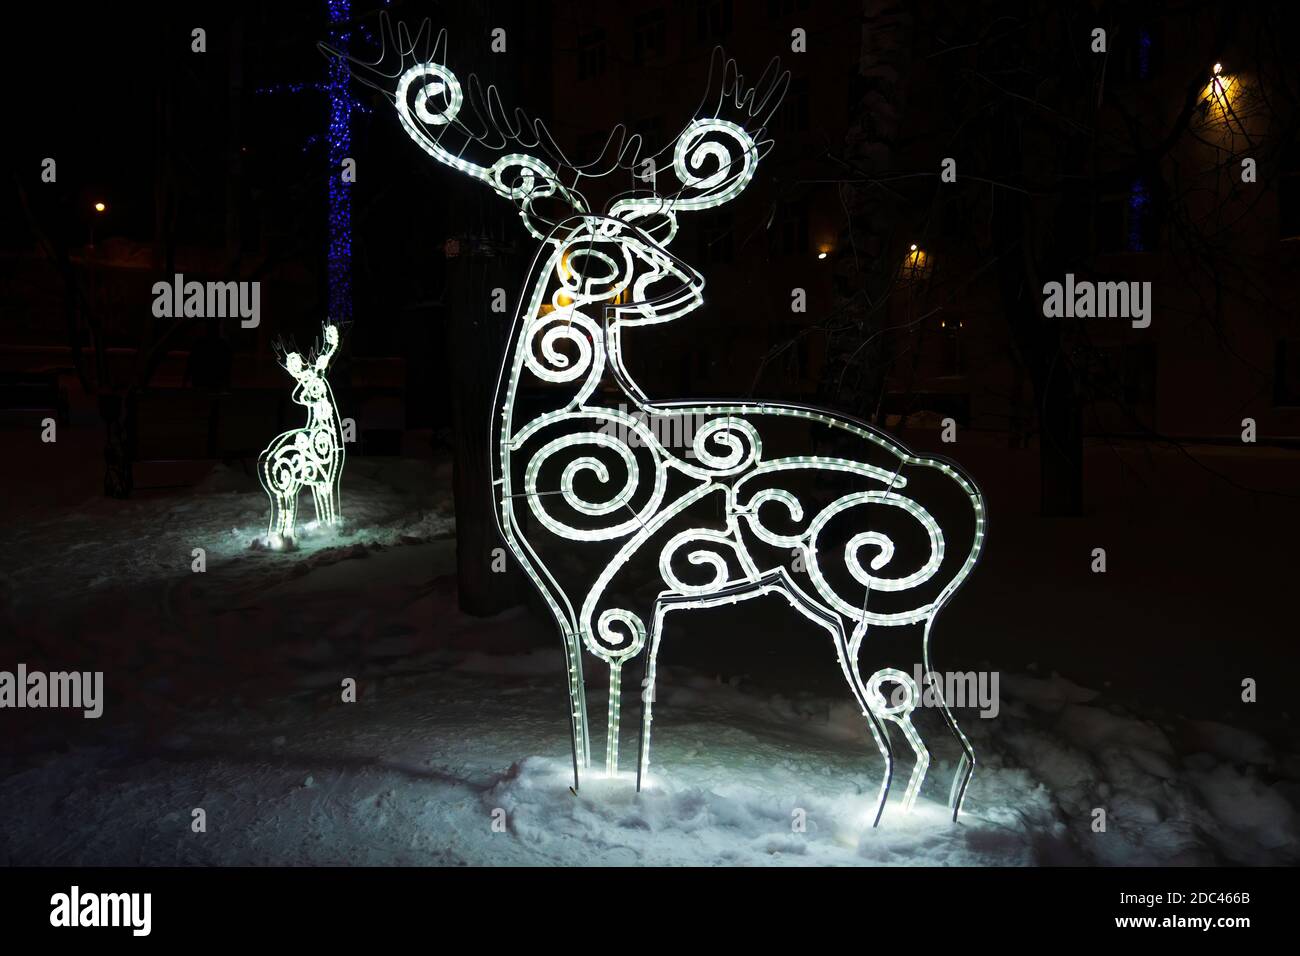 Hirschfigur aus glühender Girlande in dunkler Winternacht im Schnee. Weihnachtliche Straßendekorationen Stockfoto